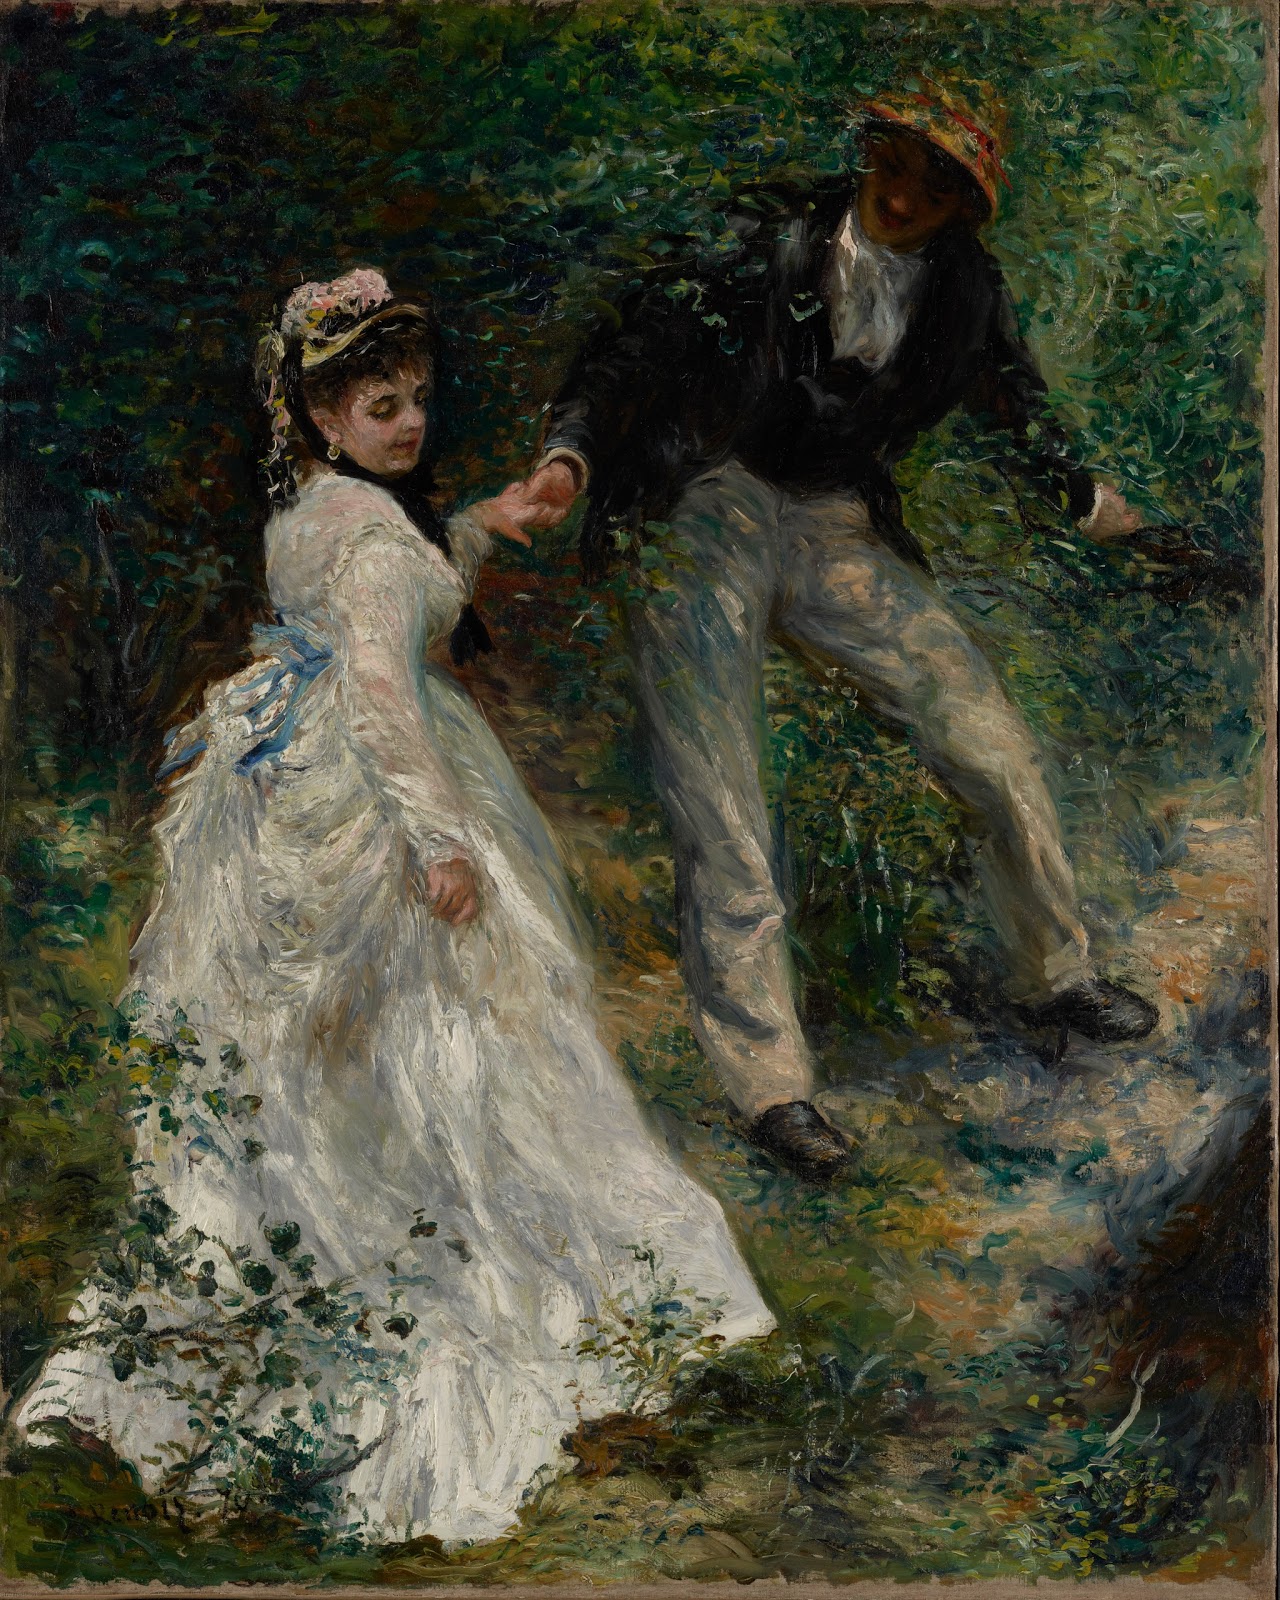 Pierre+Auguste+Renoir-1841-1-19 (269).jpg